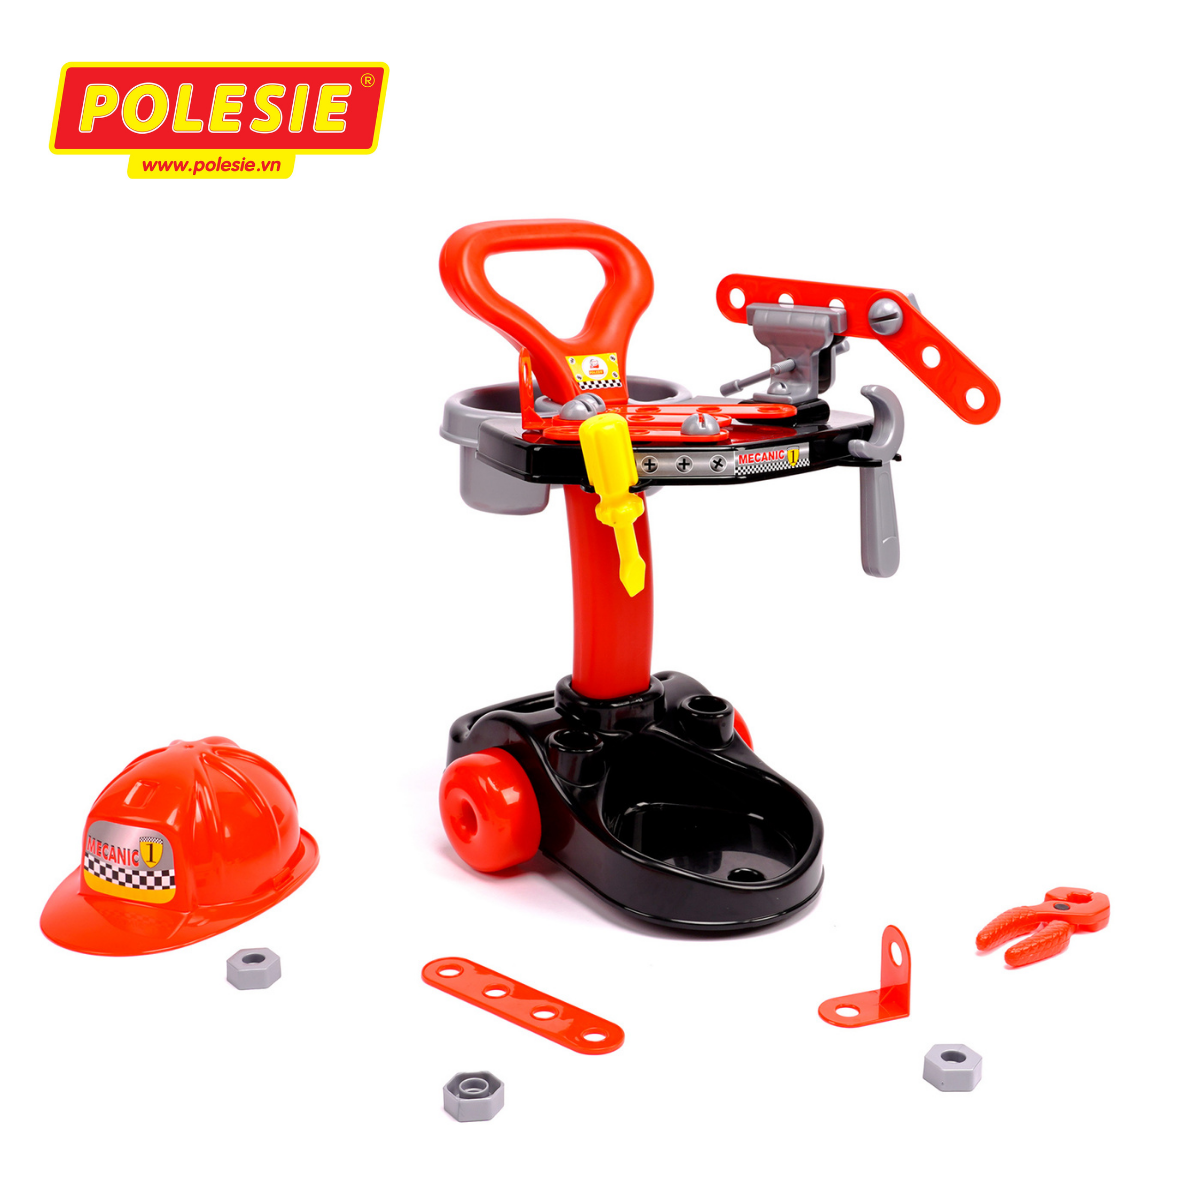 Bộ đồ chơi trung tâm cơ khí - Palau Toys